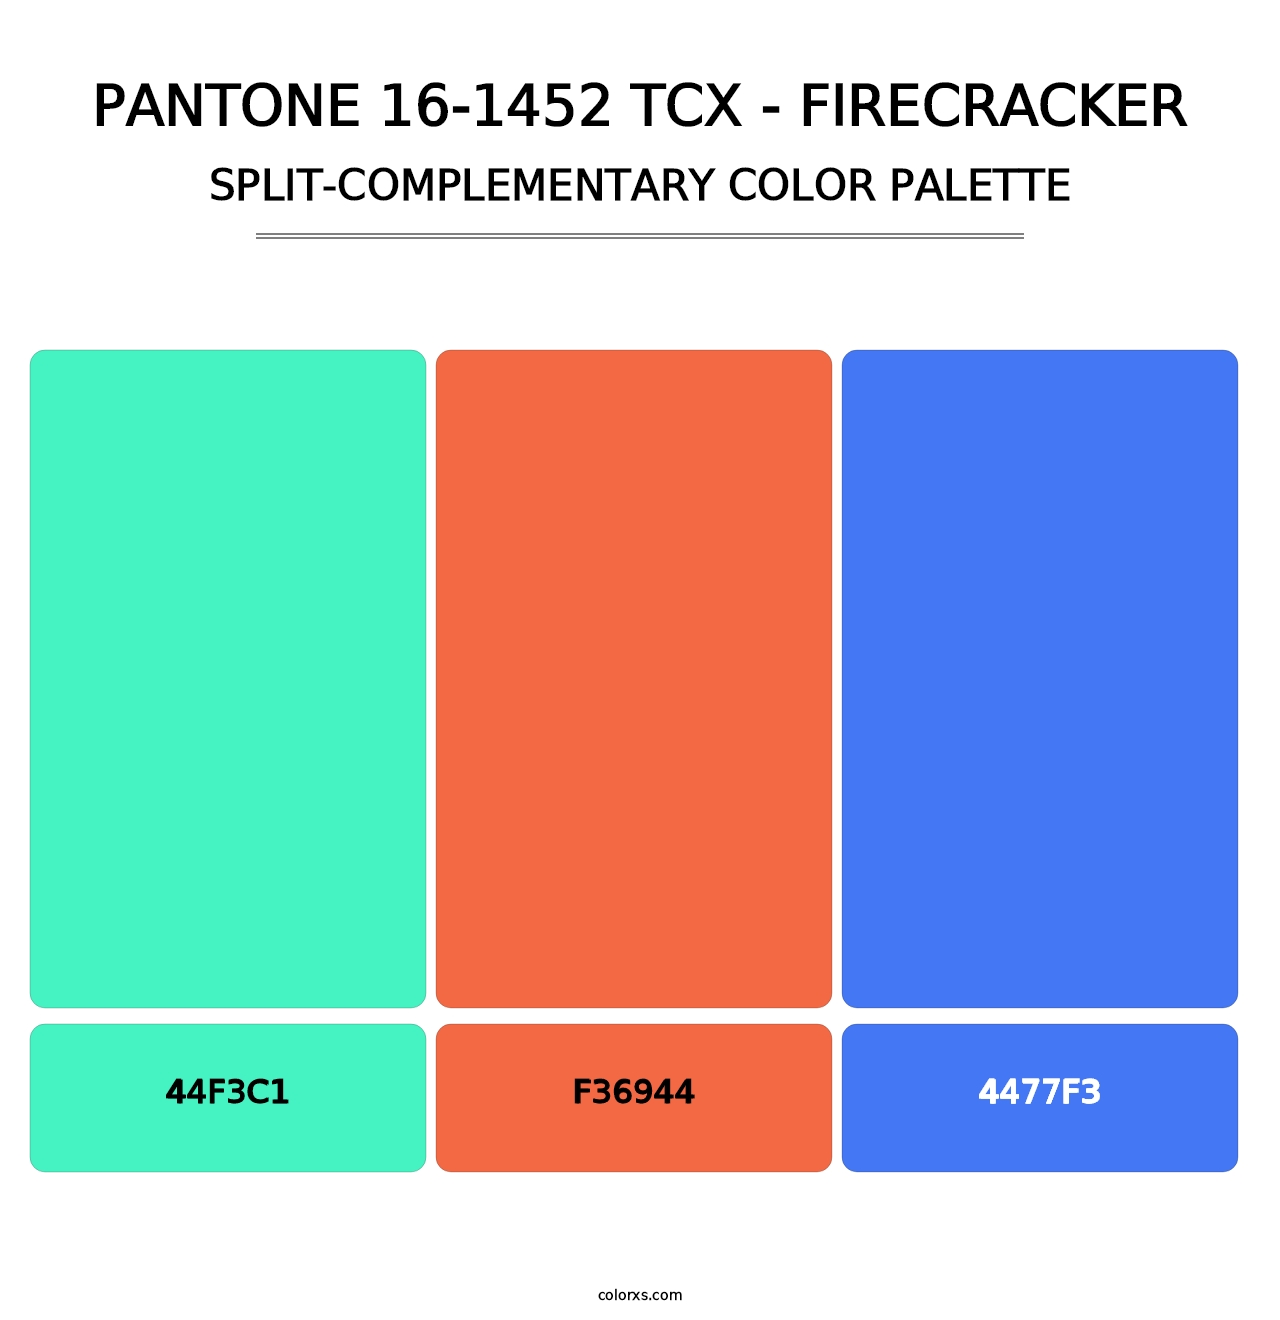 PANTONE 16-1452 TCX - Firecracker - Split-Complementary Color Palette